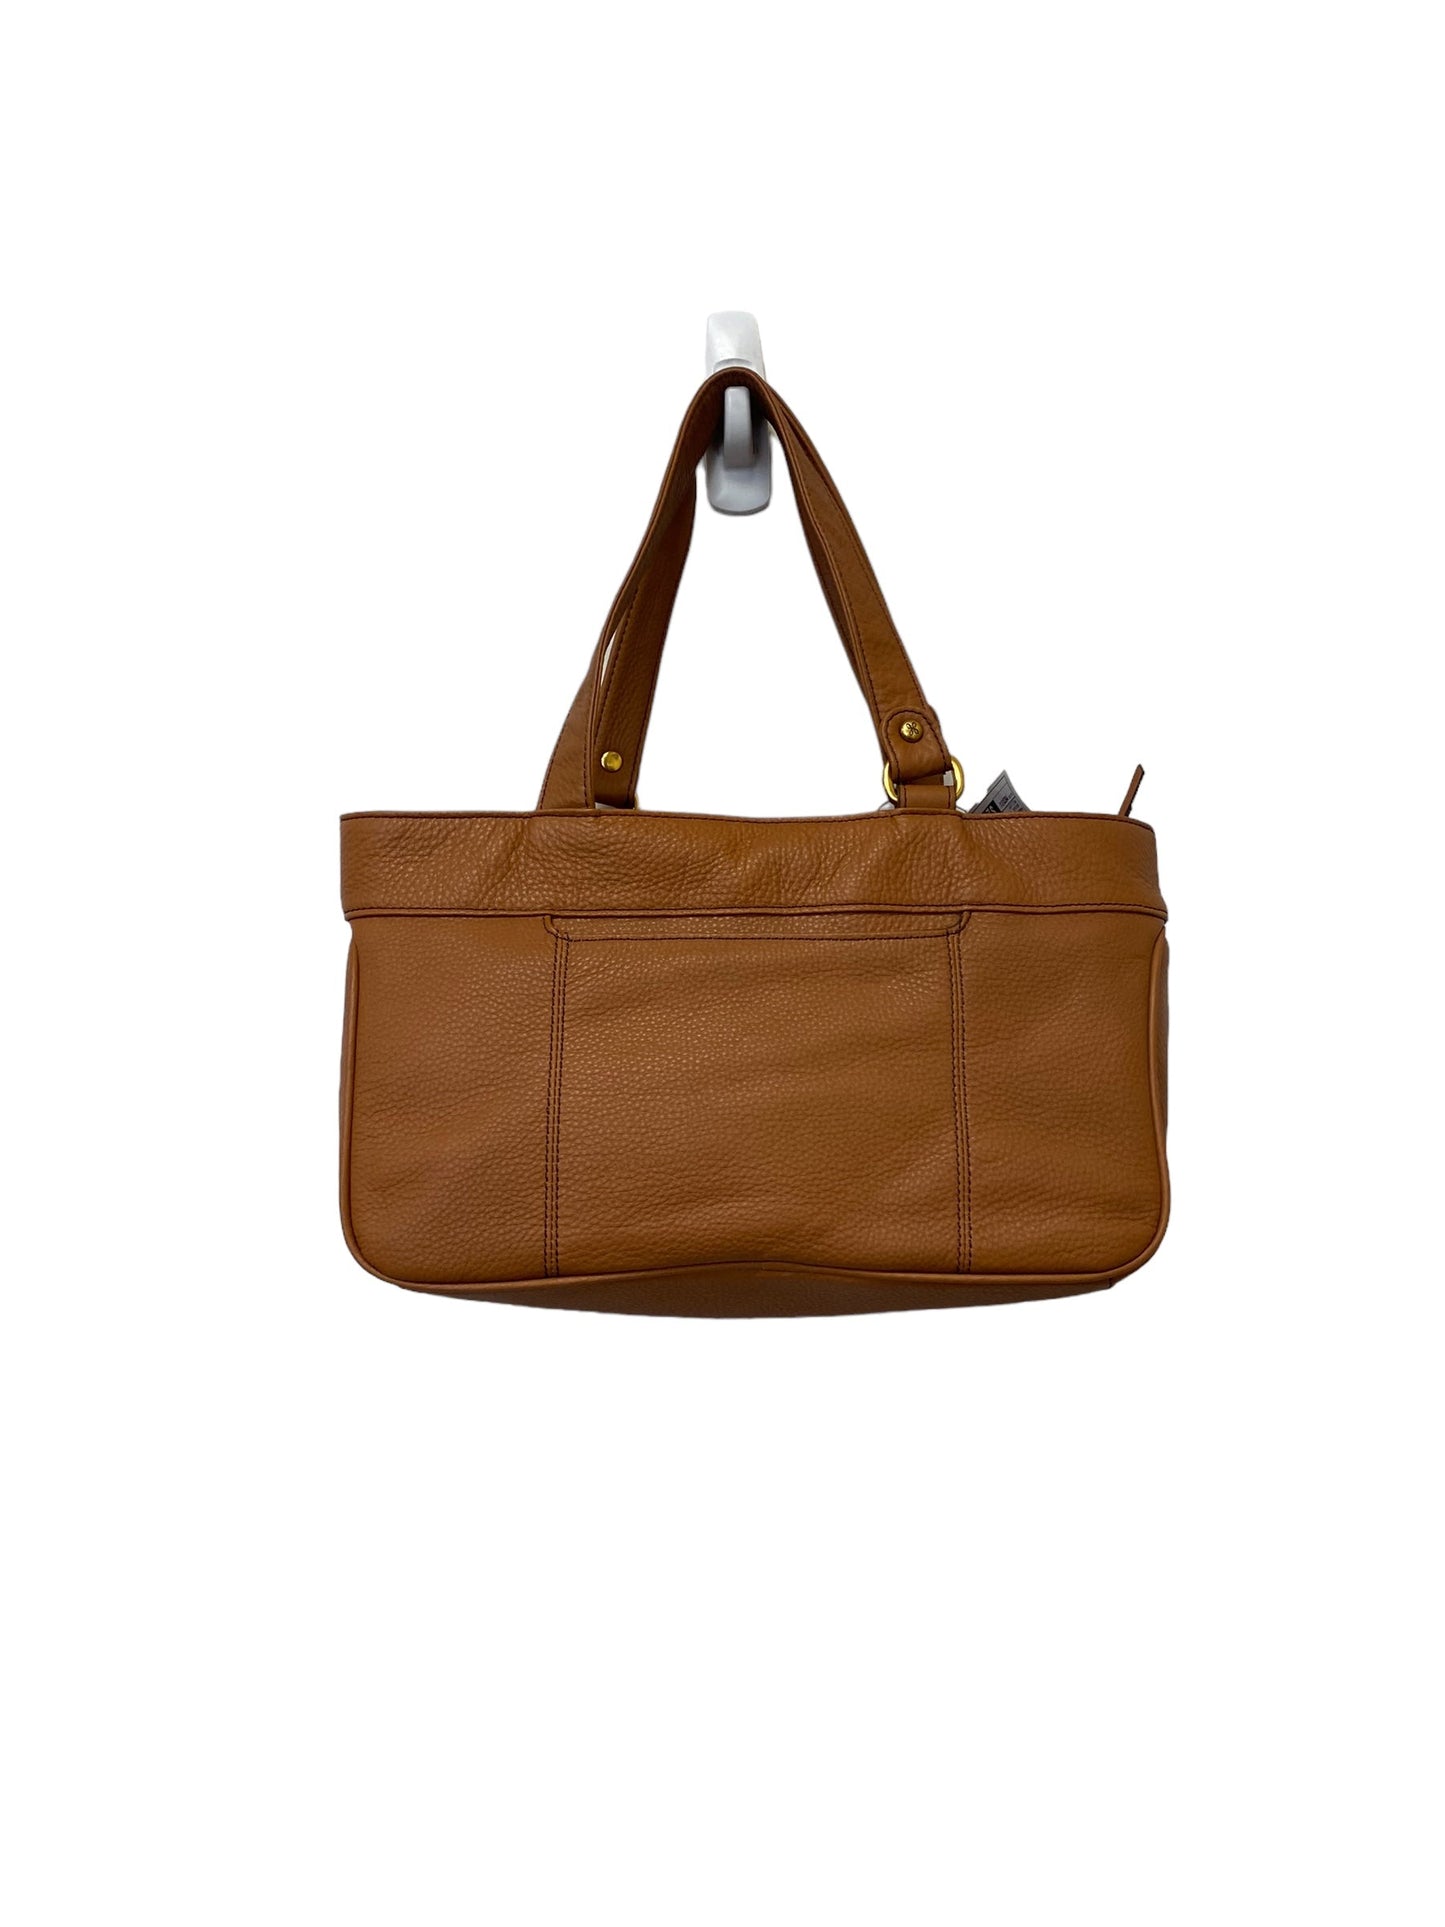 Handbag Hobo Intl, Size Medium